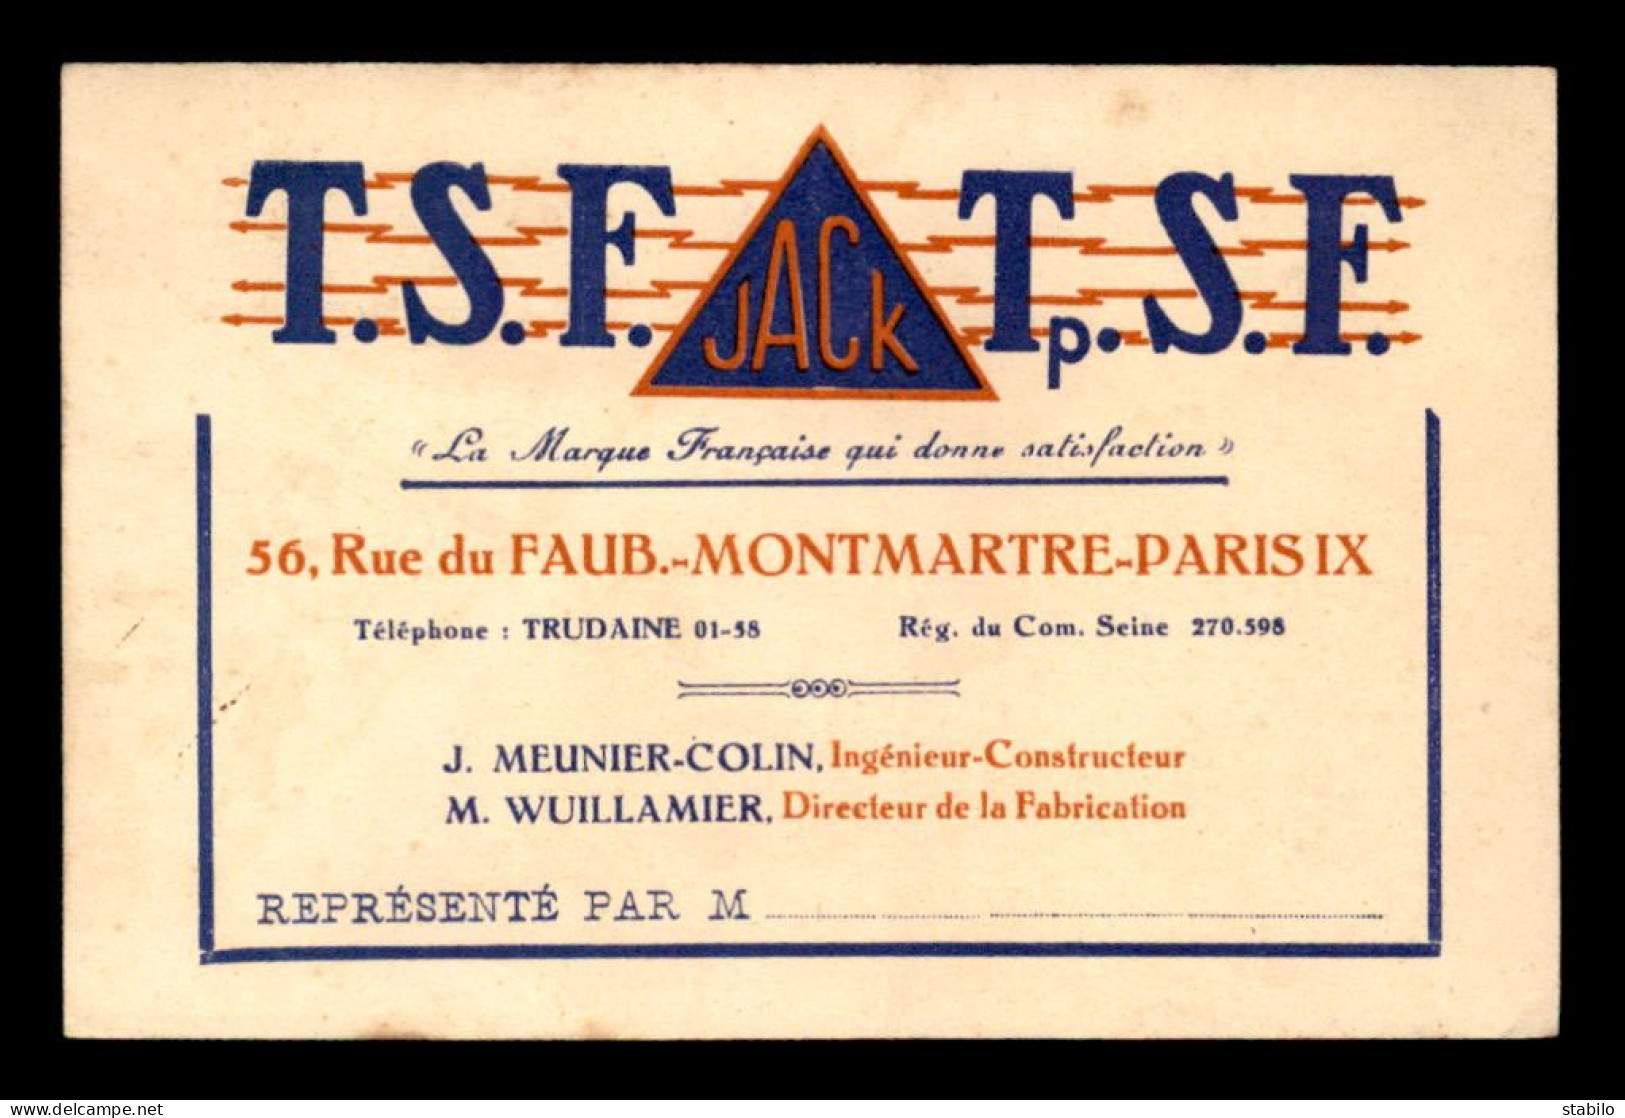 CARTE DE VISITE - T.S.F. JACK, 56 RUE DU FG MONTMARTRE PARIS 9EME - FORMAT 12 X 7.8 CM - Visiting Cards